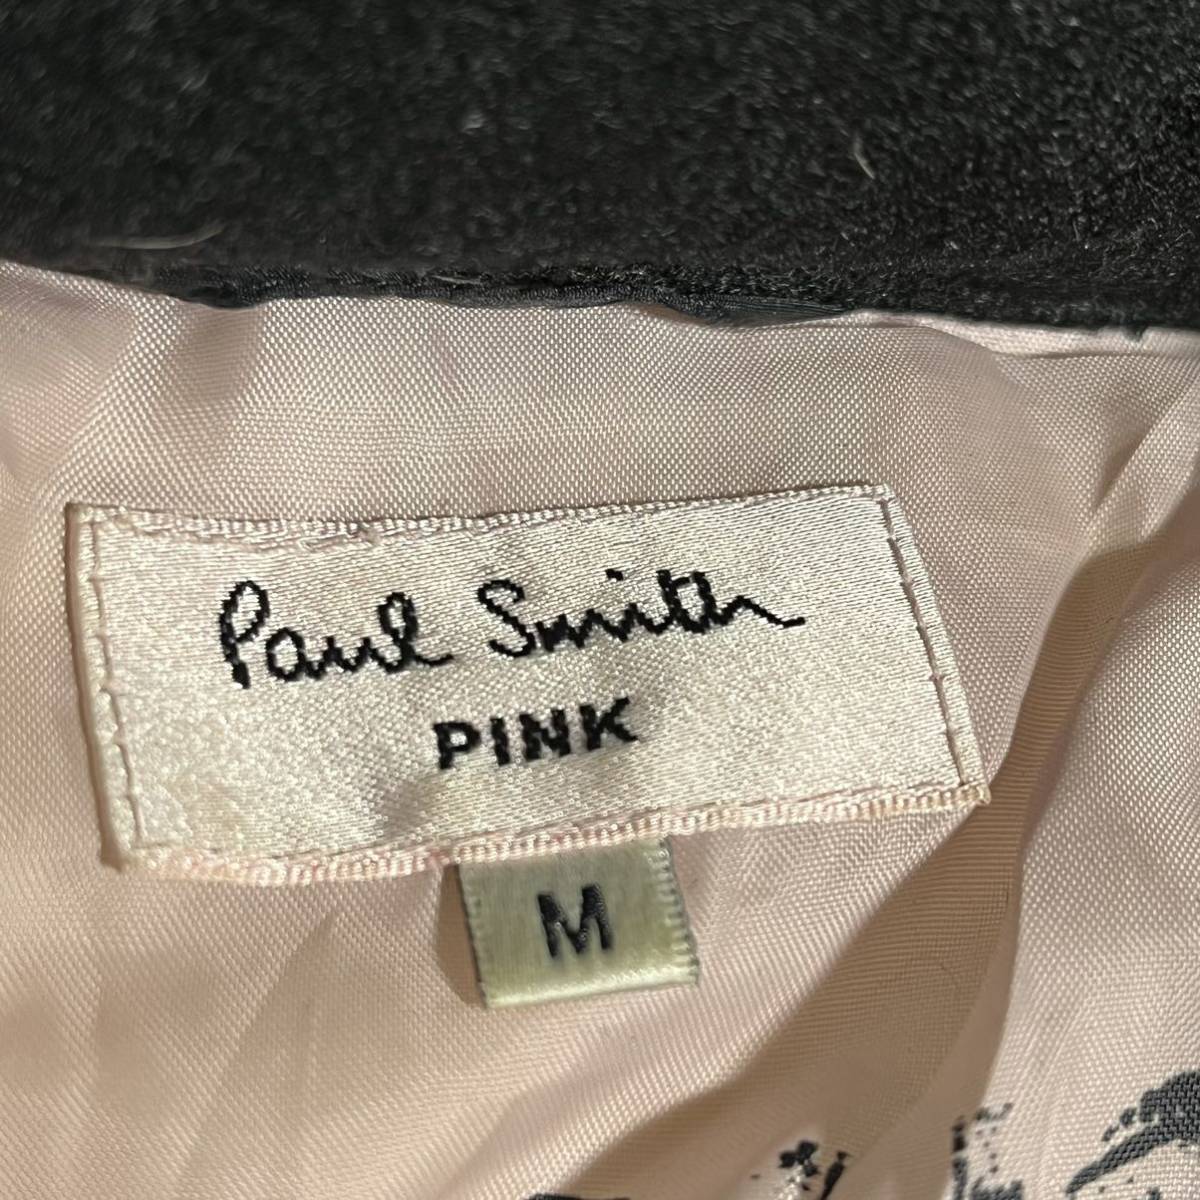 Paul Smith PINK ポールスミス うさぎワッペン ダウンジャケット 裏地ピンク 総柄 レディース